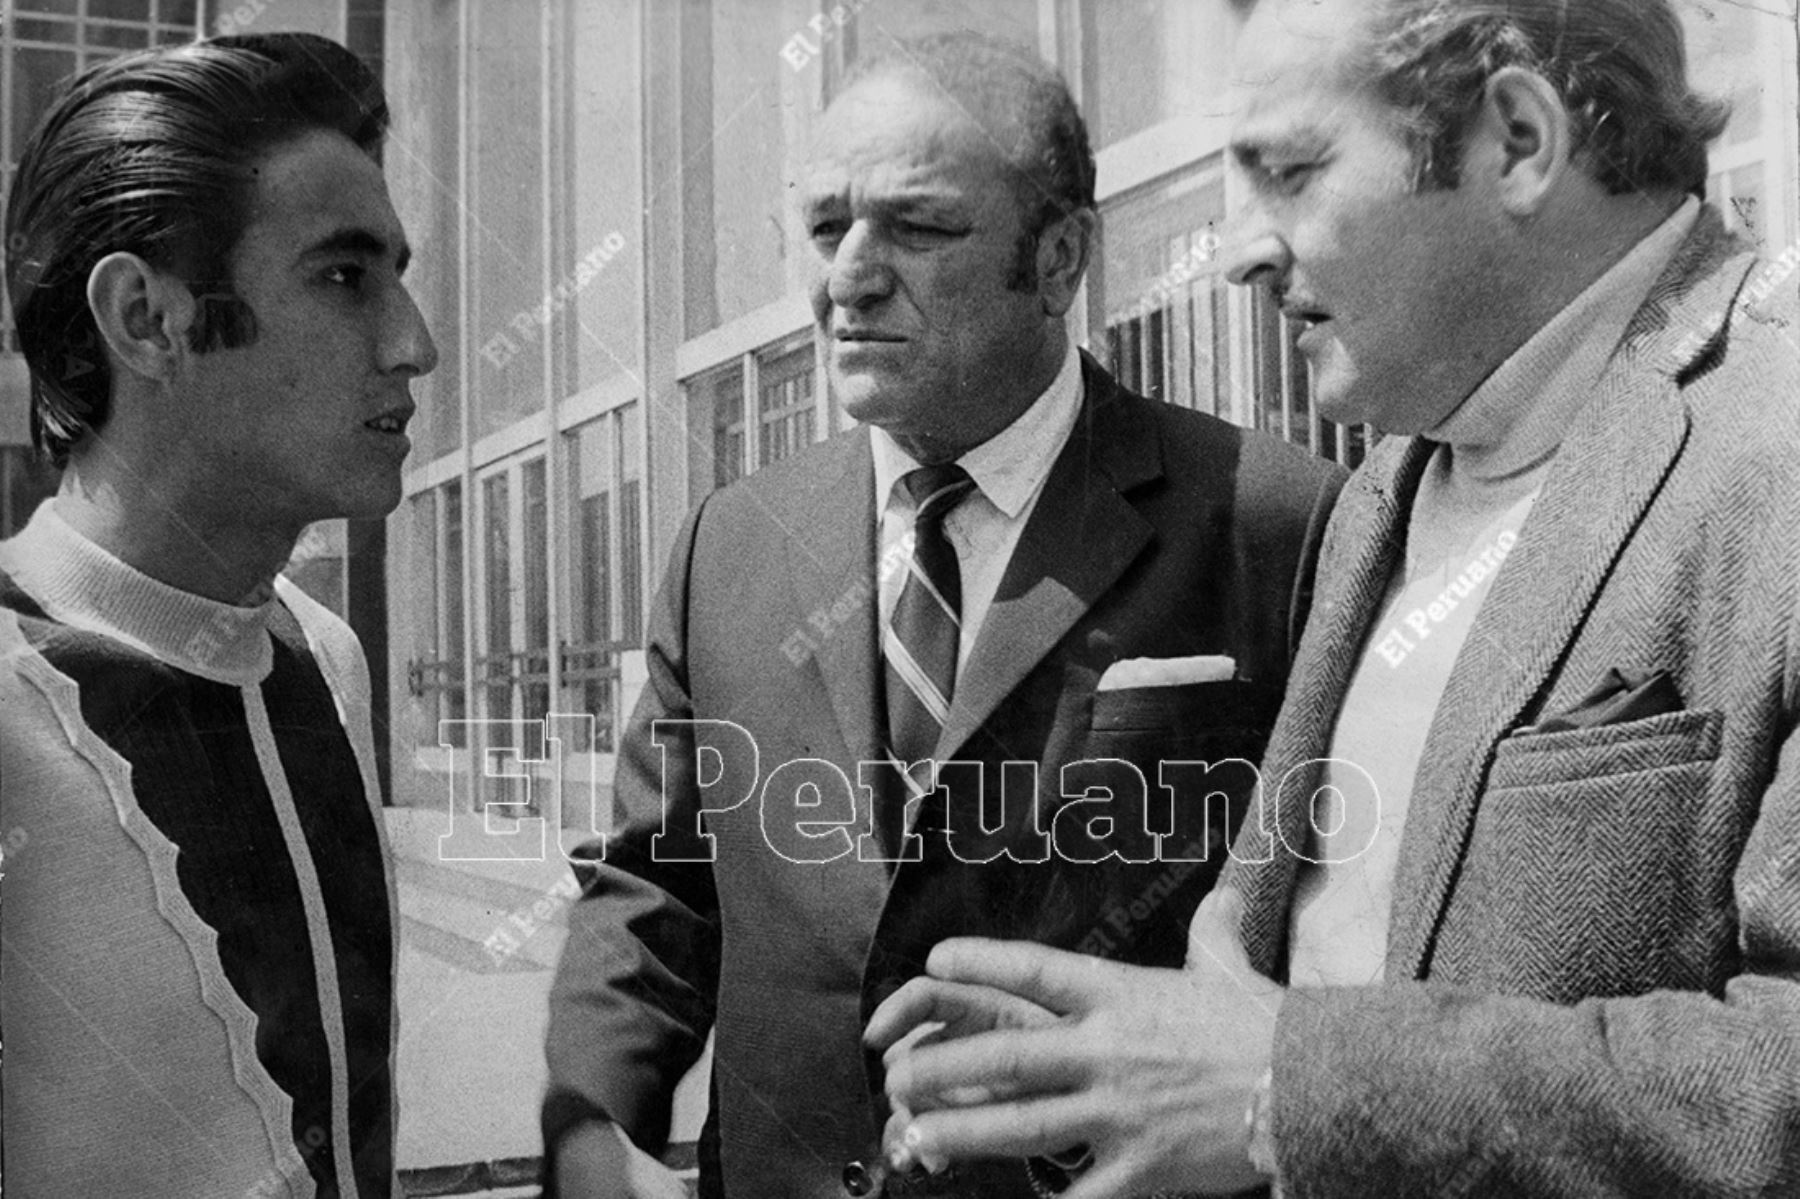 Lima - 14 setiembre 1970 / Teodoro "Lolo" Fernández y Alberto "Toto" Terry conversan con Percy Rojas, delantero de Universitario de deportes. Foto: Archivo Histórico de El Peruano